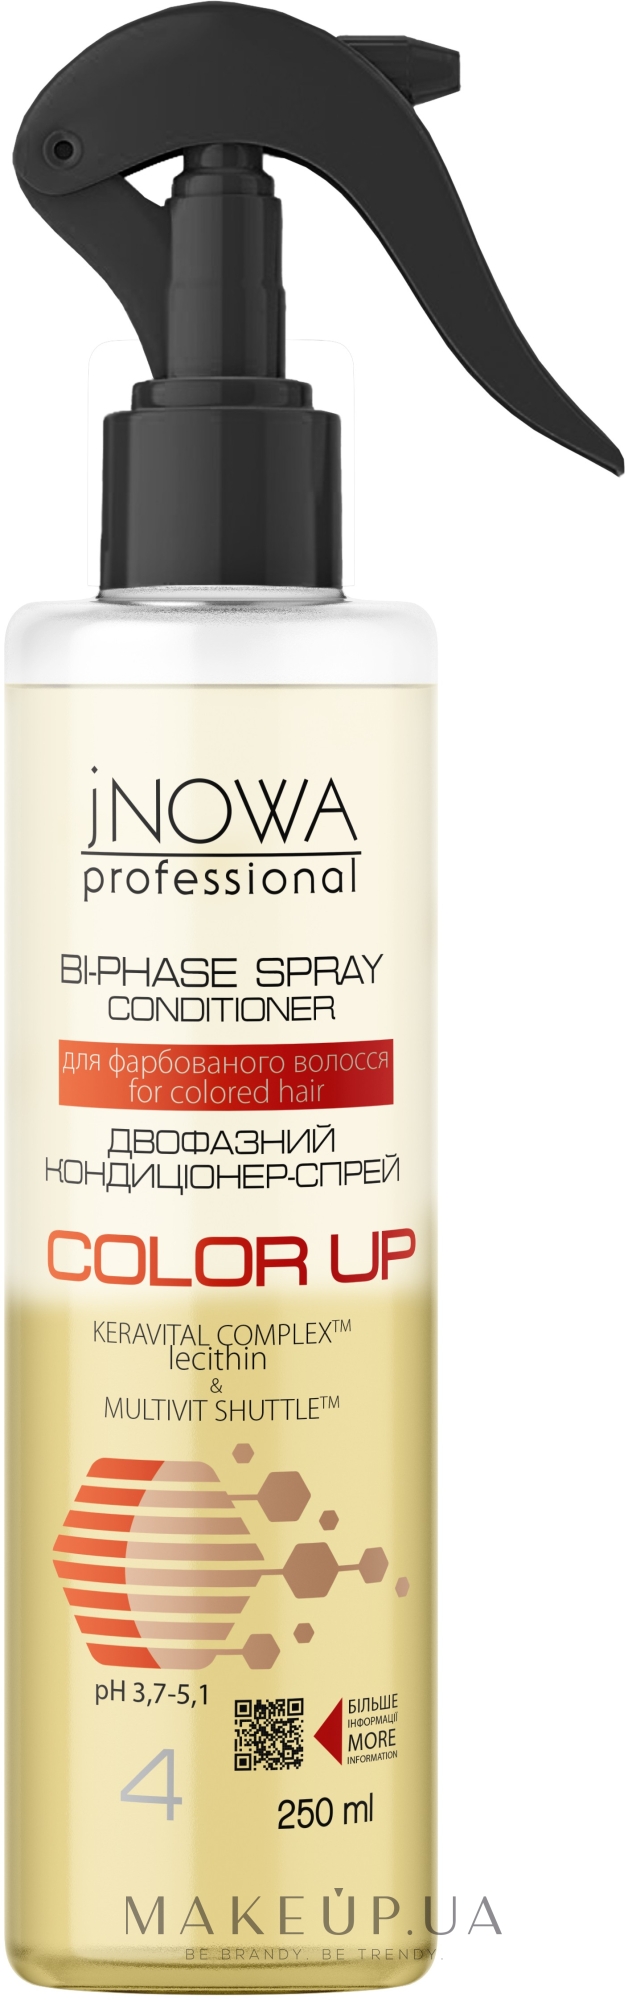 Двофазний спрей-кондиціонер для фарбованого волосся - JNOWA Professional 4 Color Up Bi-Phase Spray Conditioner — фото 250ml